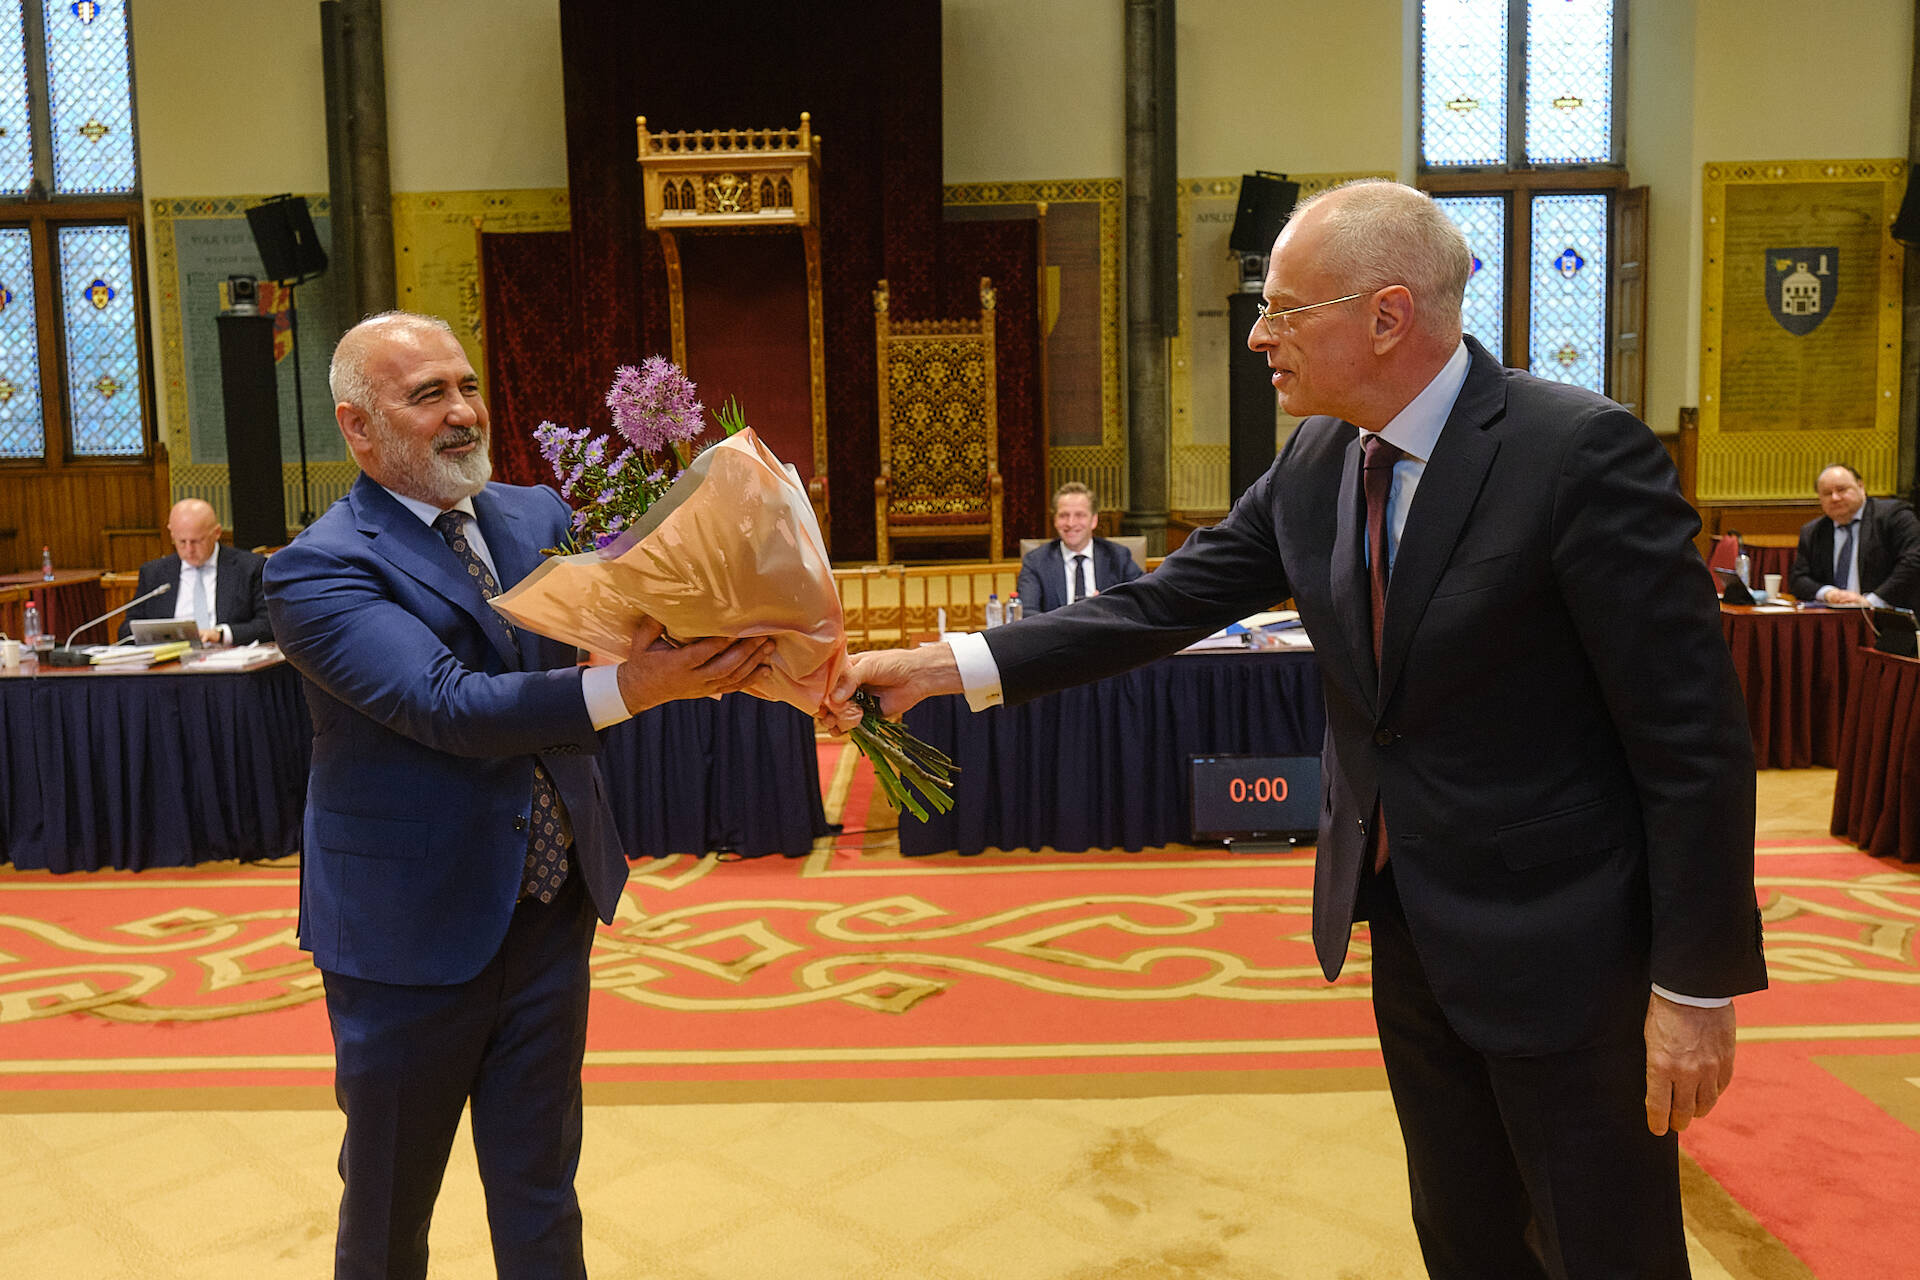 Felicitaties van Eerste Kamervoorzitter Jan Anthonie Bruijn voor senator Karakus die zijn maidenspeech hield